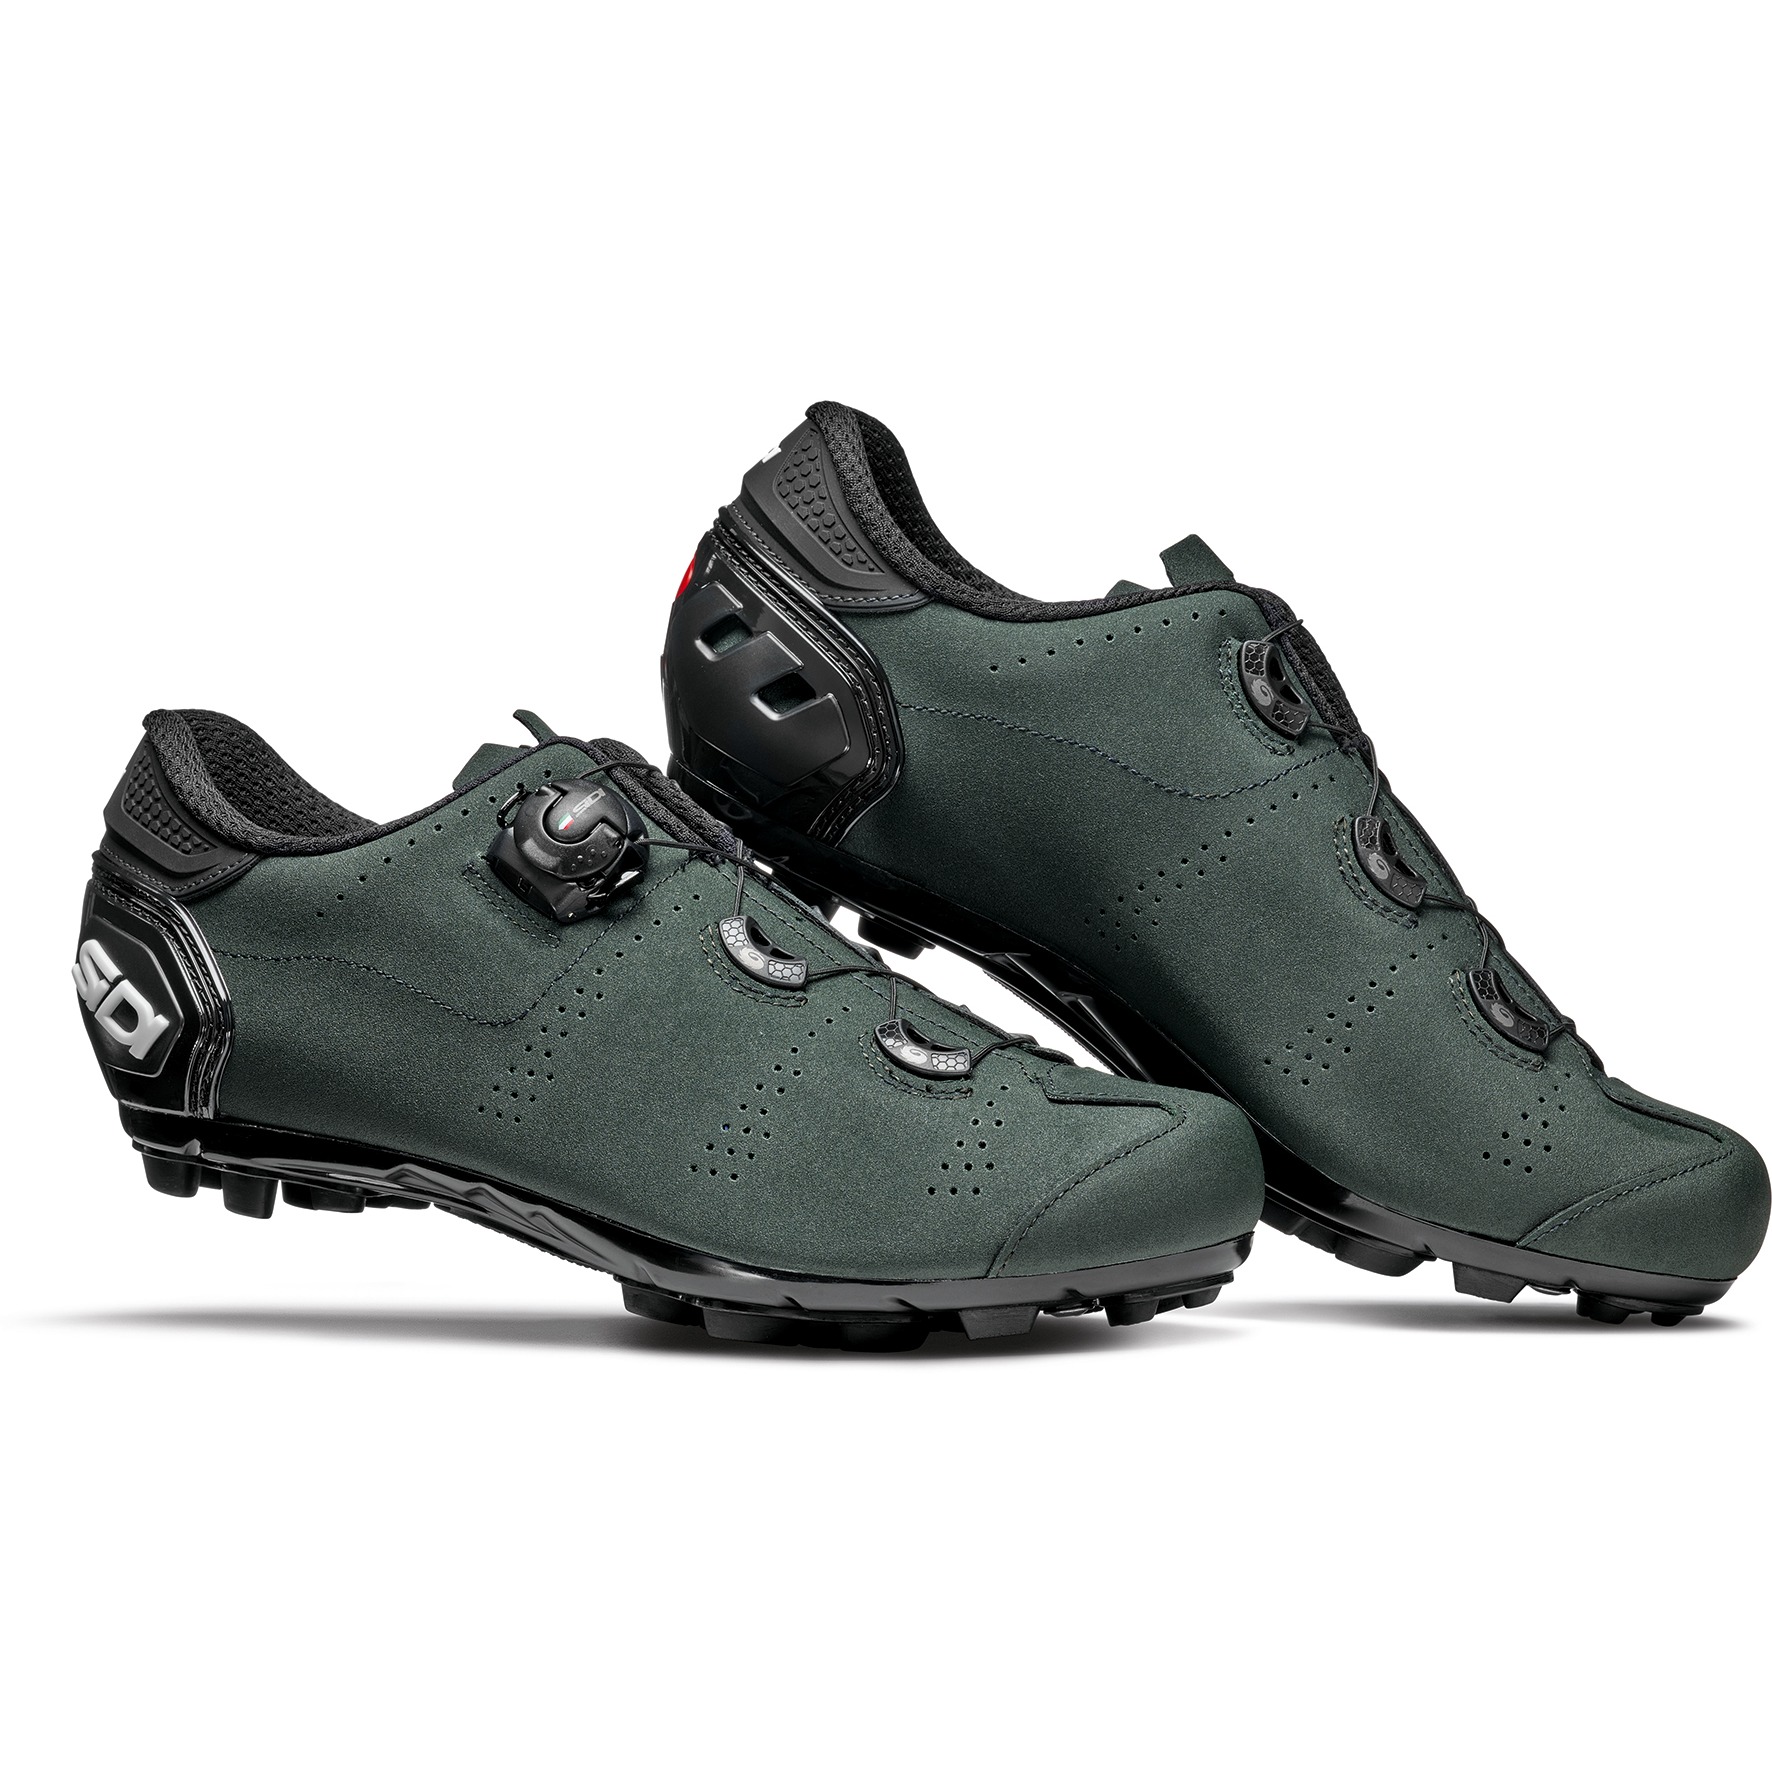 Produktbild von Sidi Speed MTB Schuhe - dark green